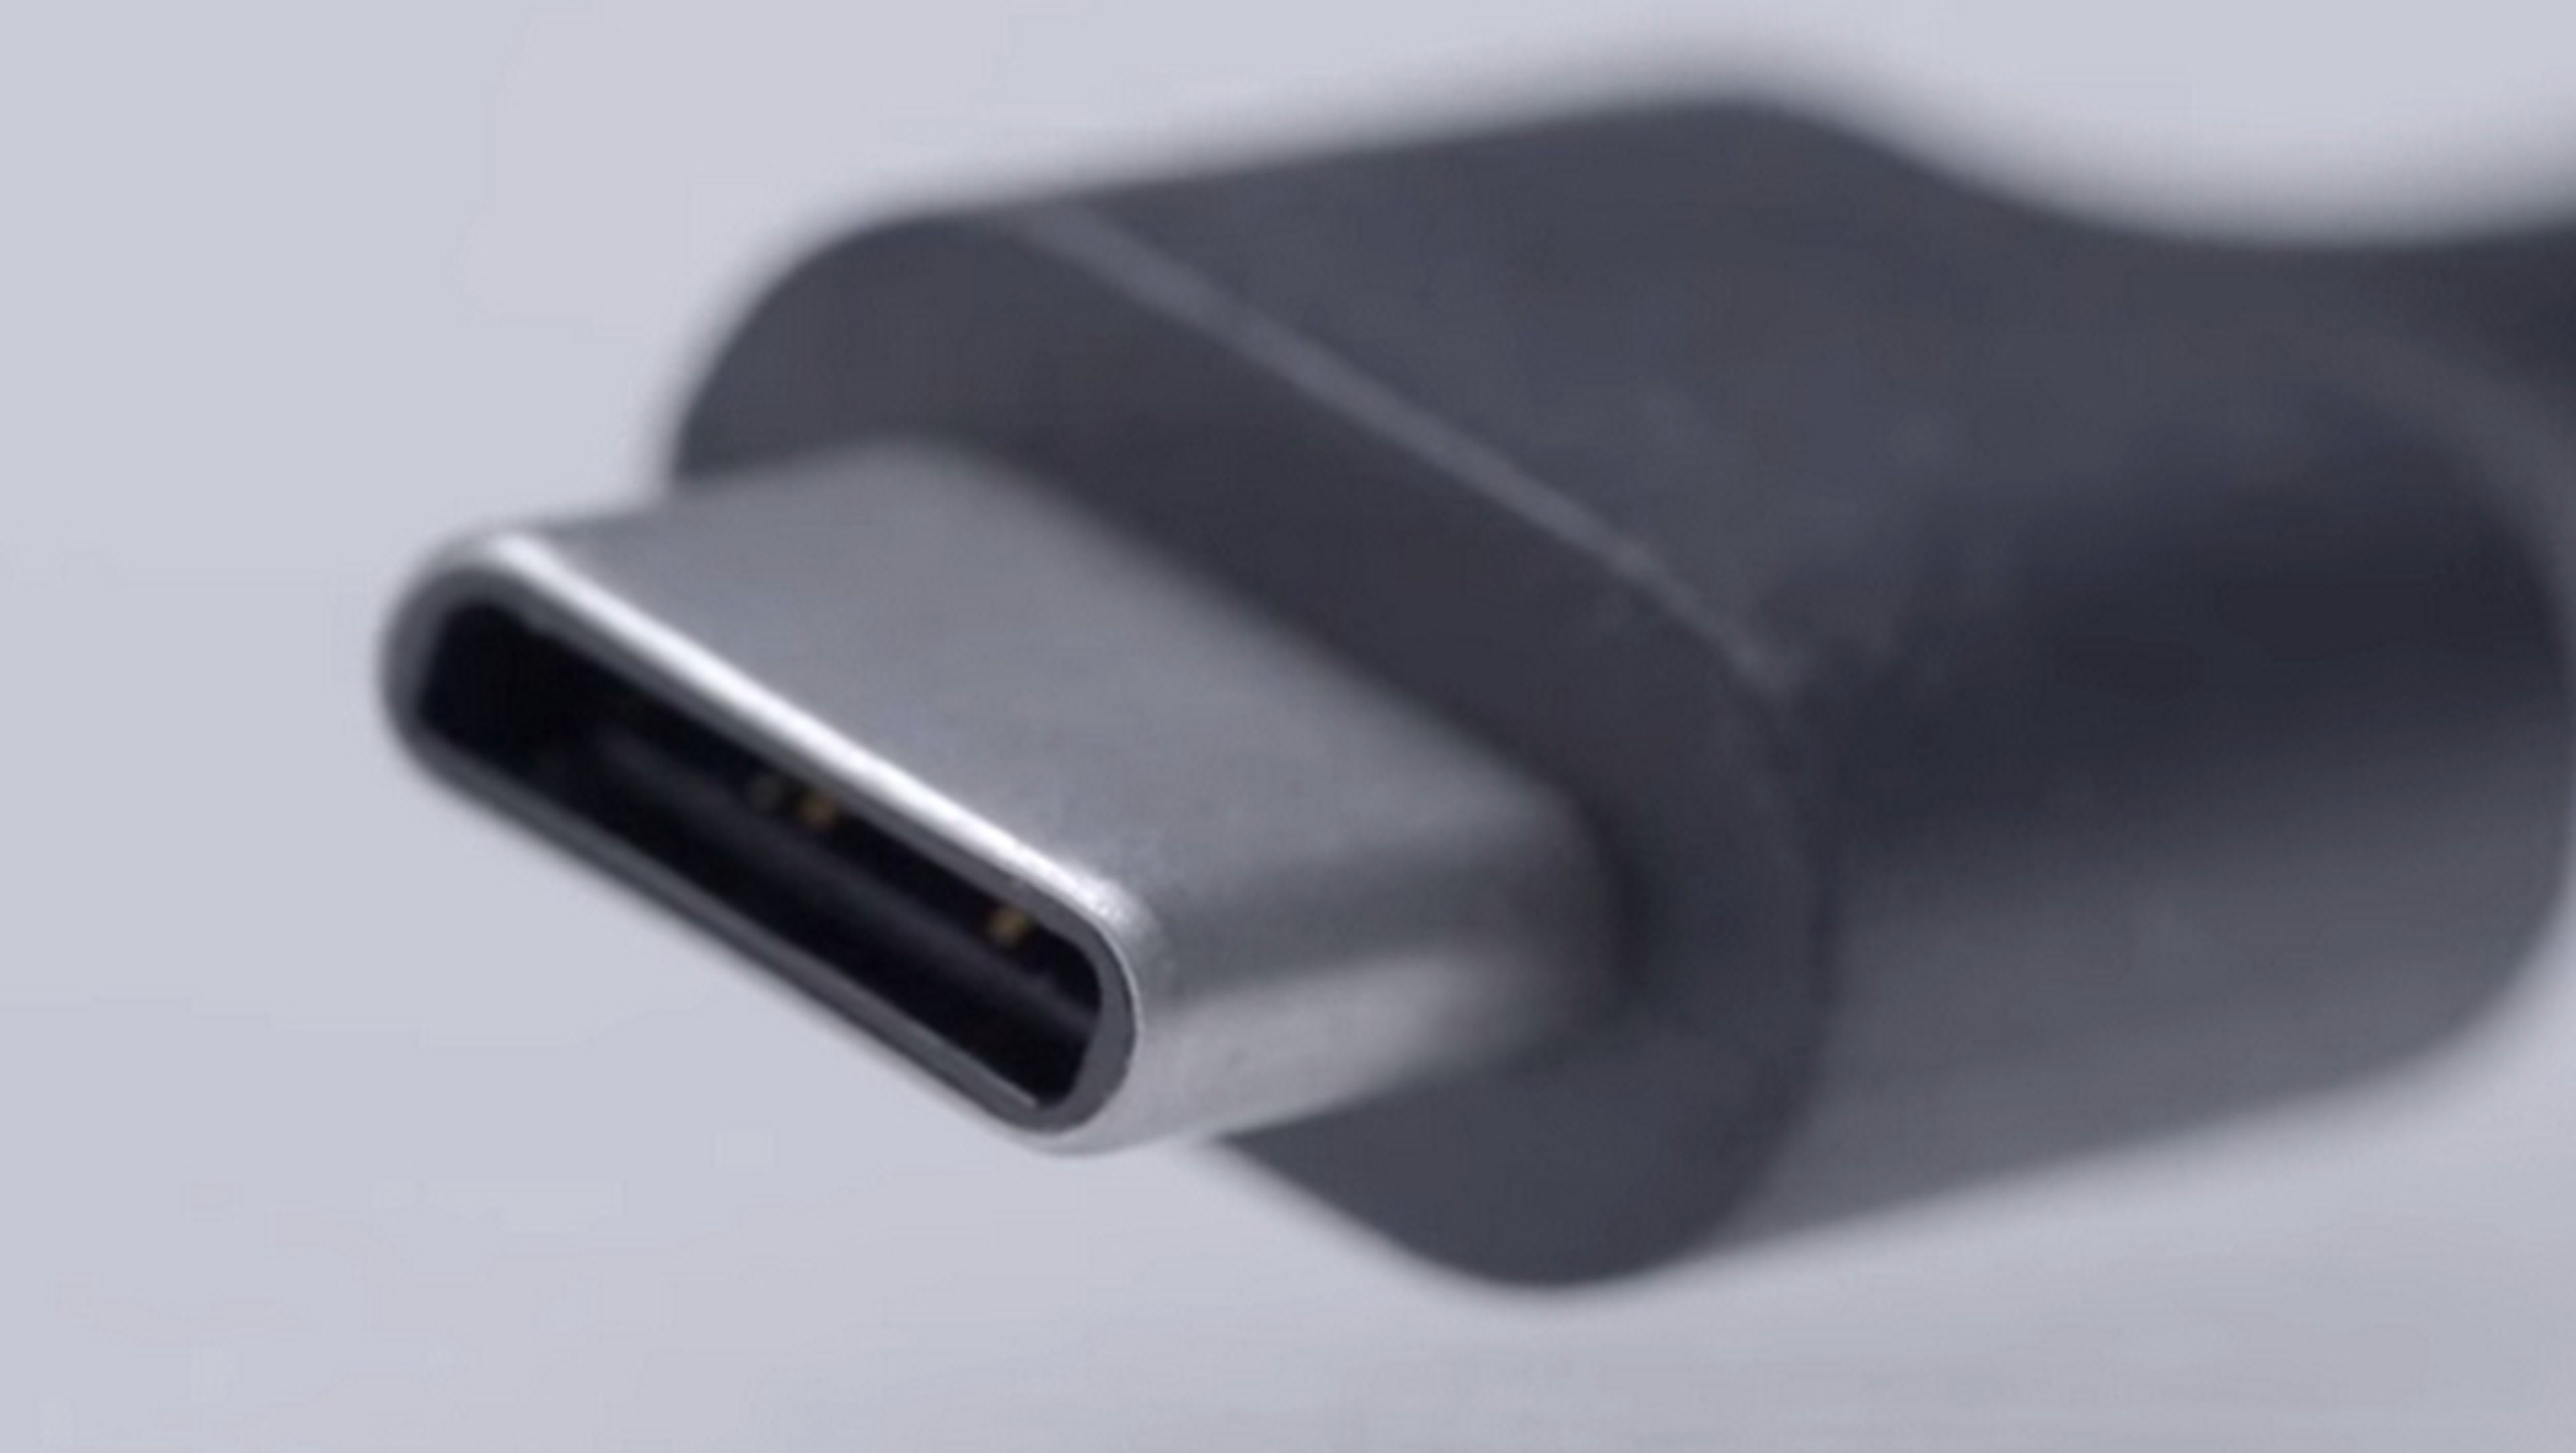 El nuevo smartphone Nexus de Google tendrá USB Type C reversible